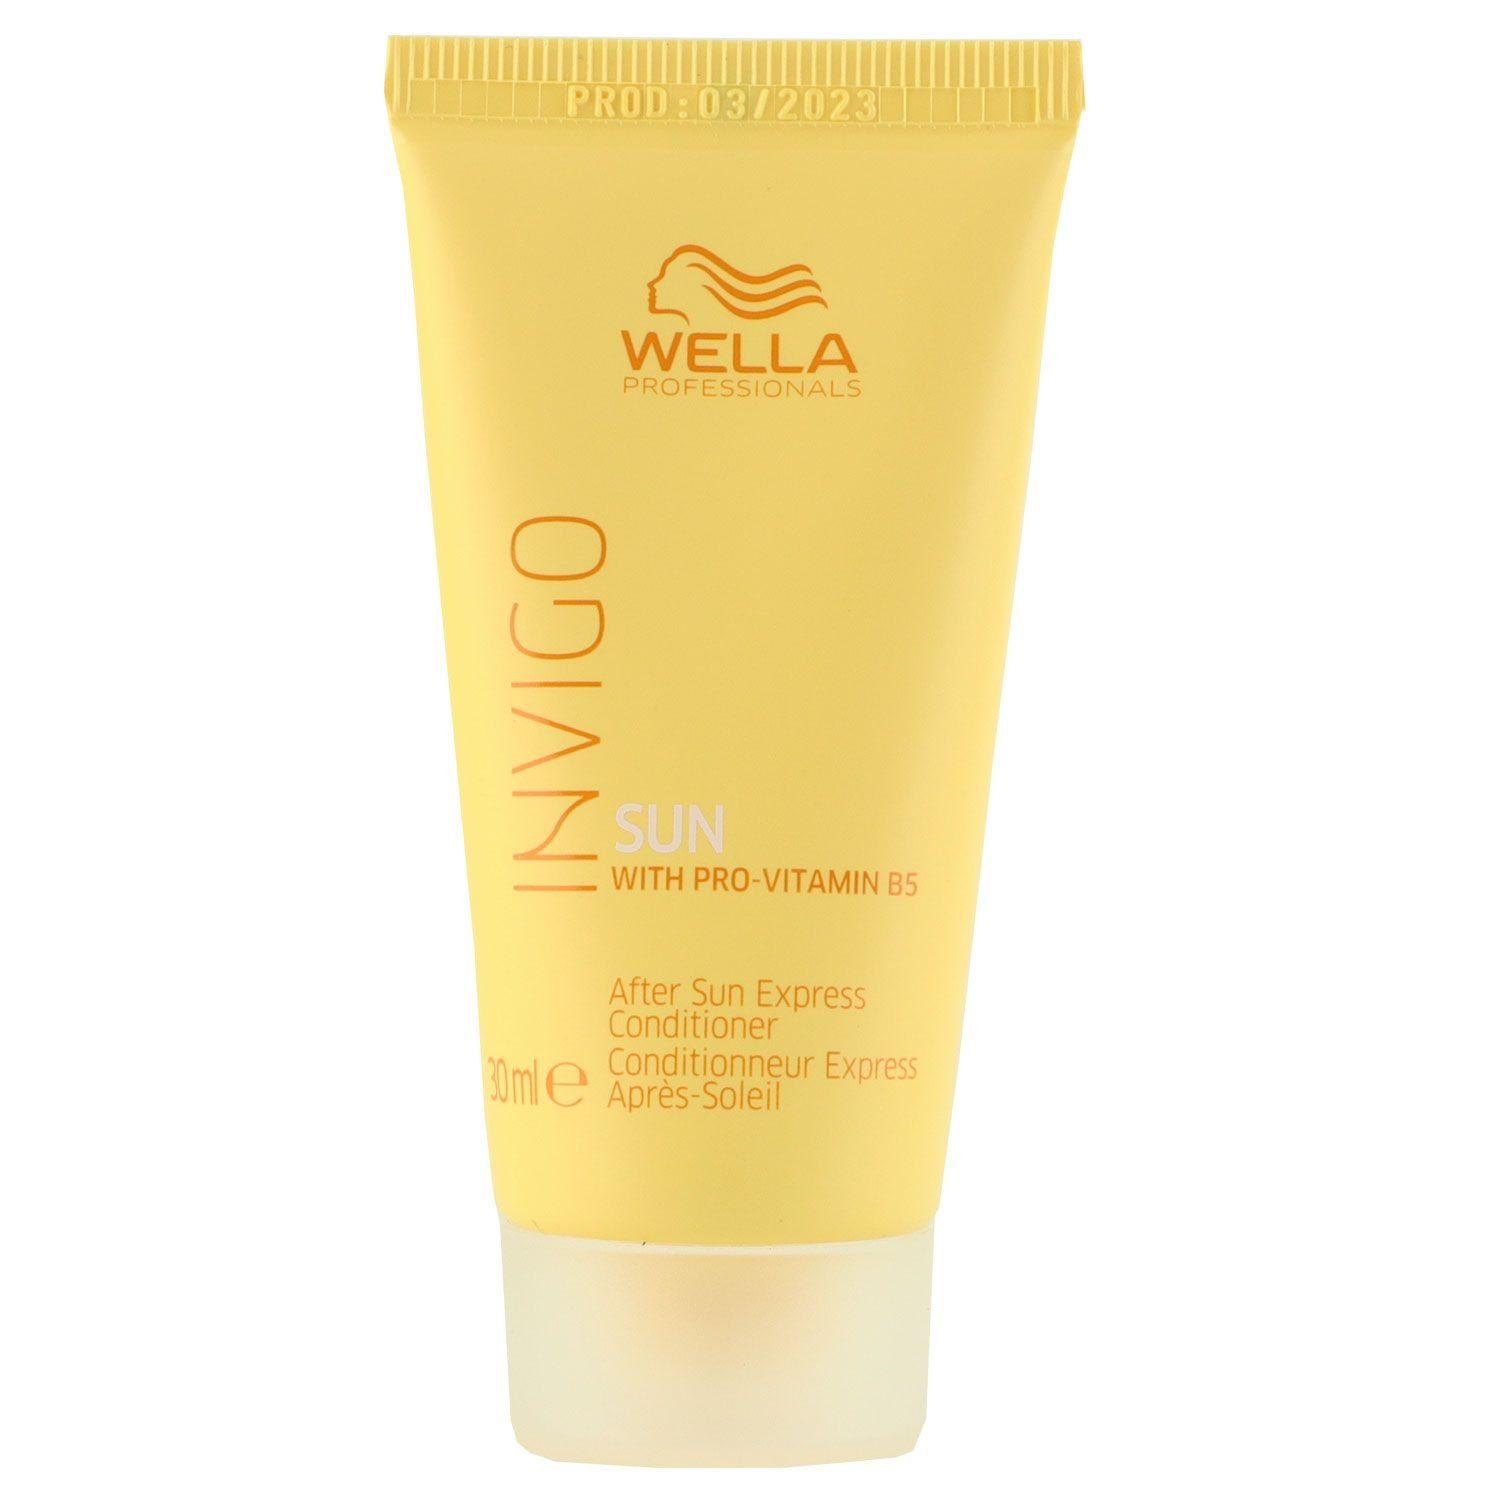 Professionals 30 ml Conditioner Invigo Sun Haarspülung Wella Express After Sun